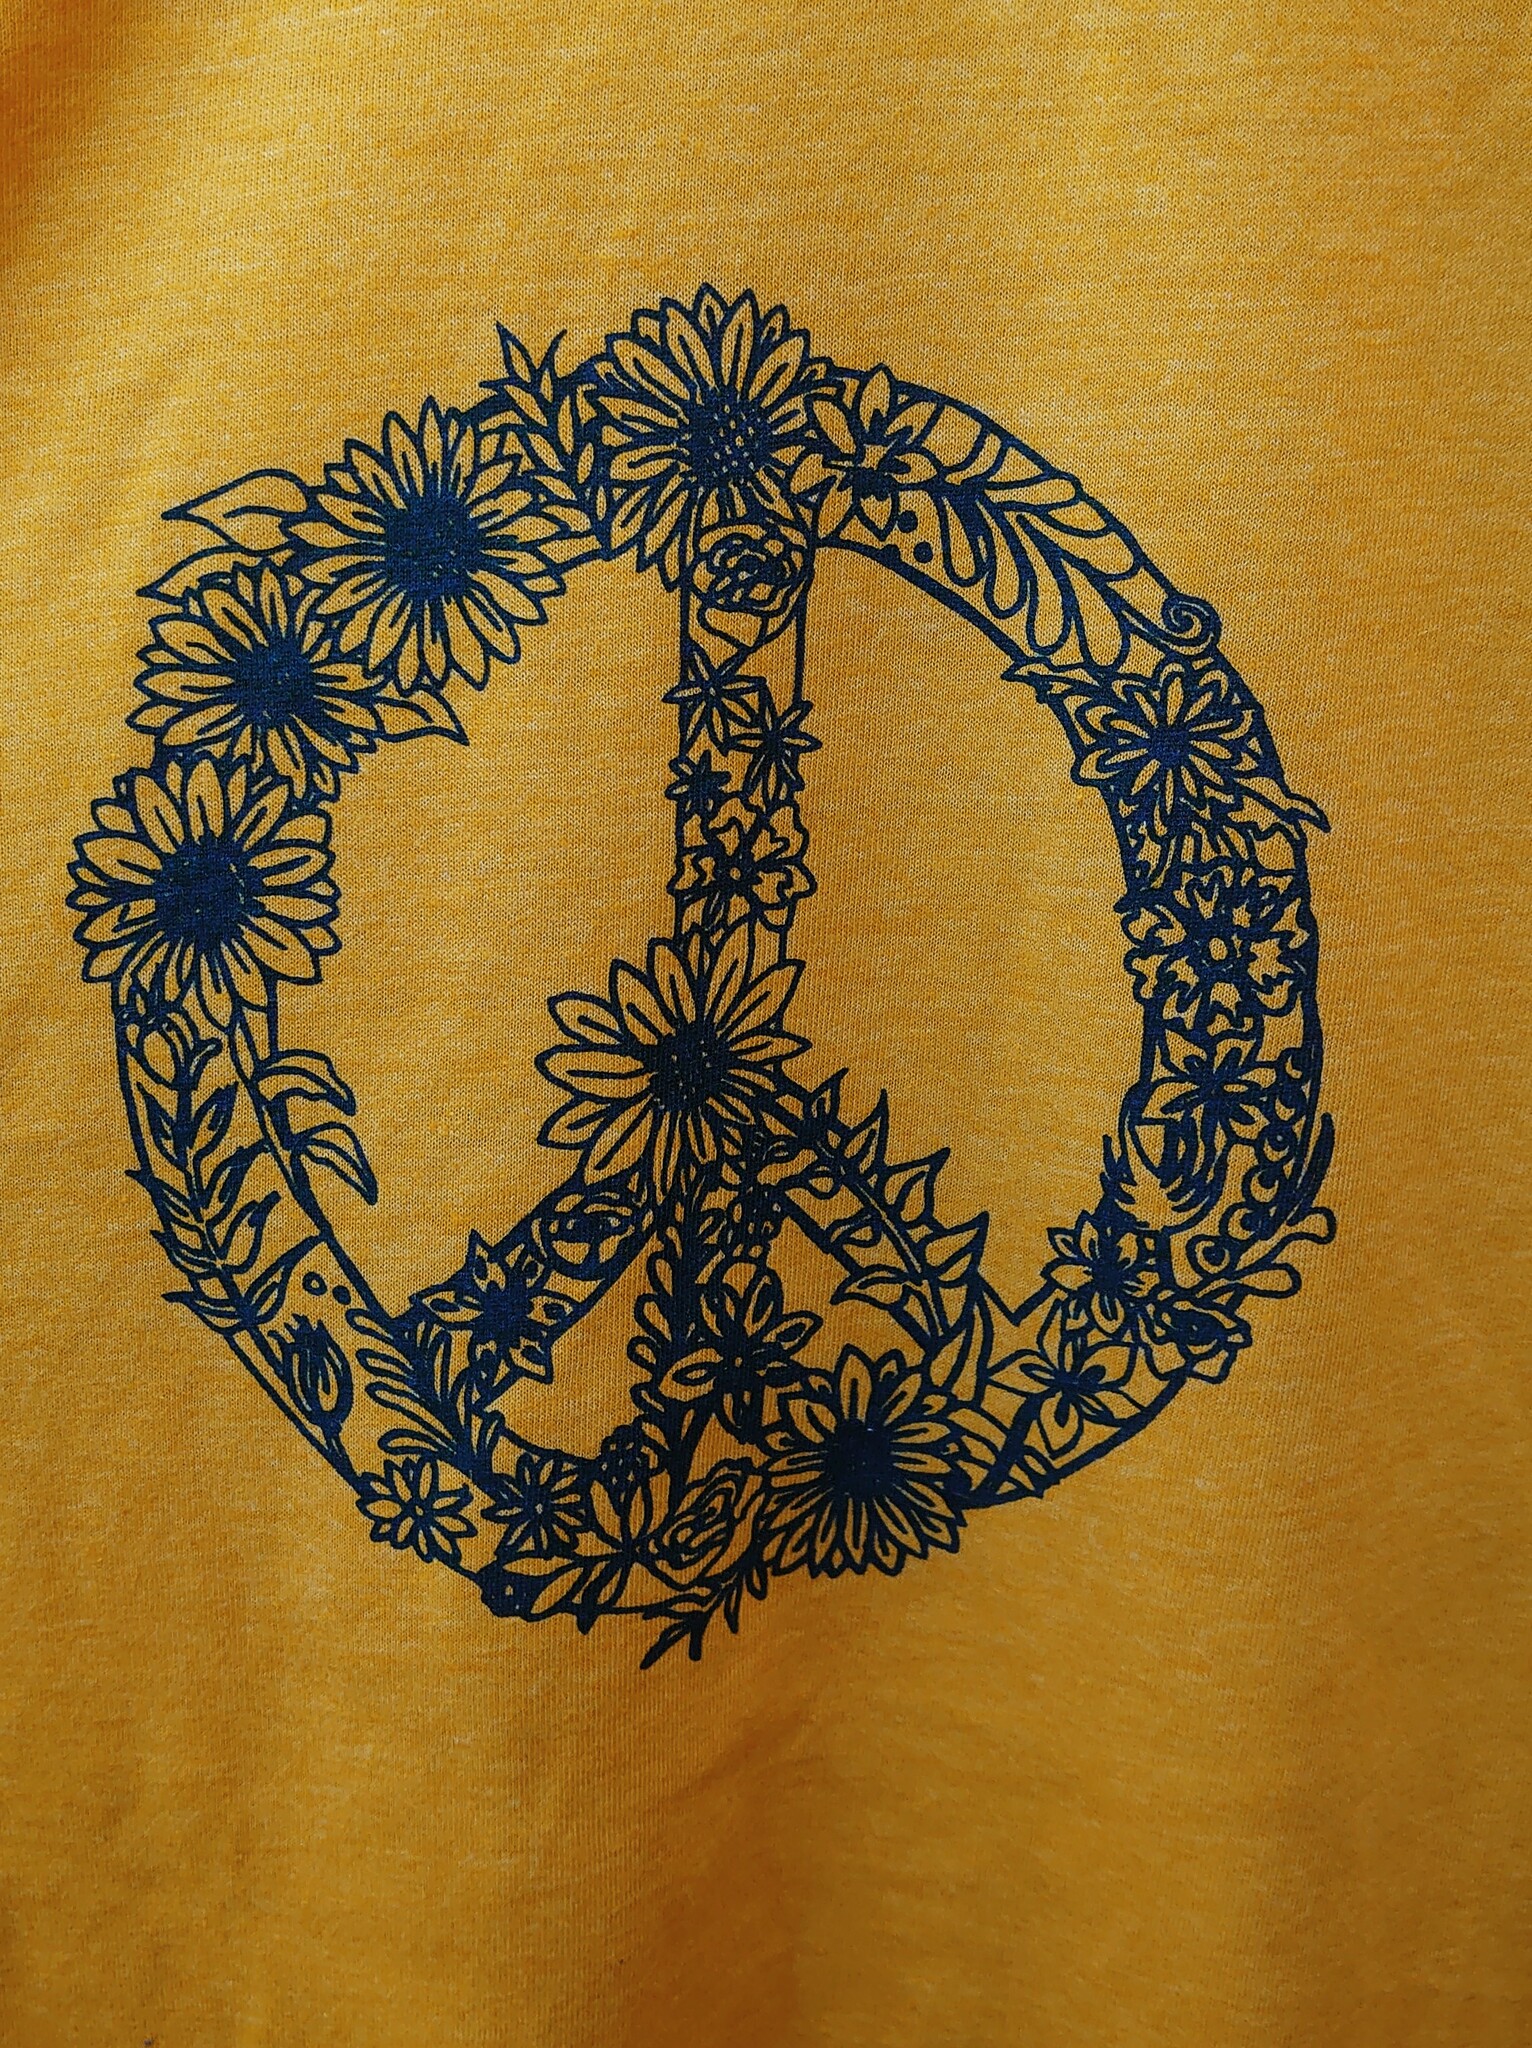 Peace for Ukraine T-shirt